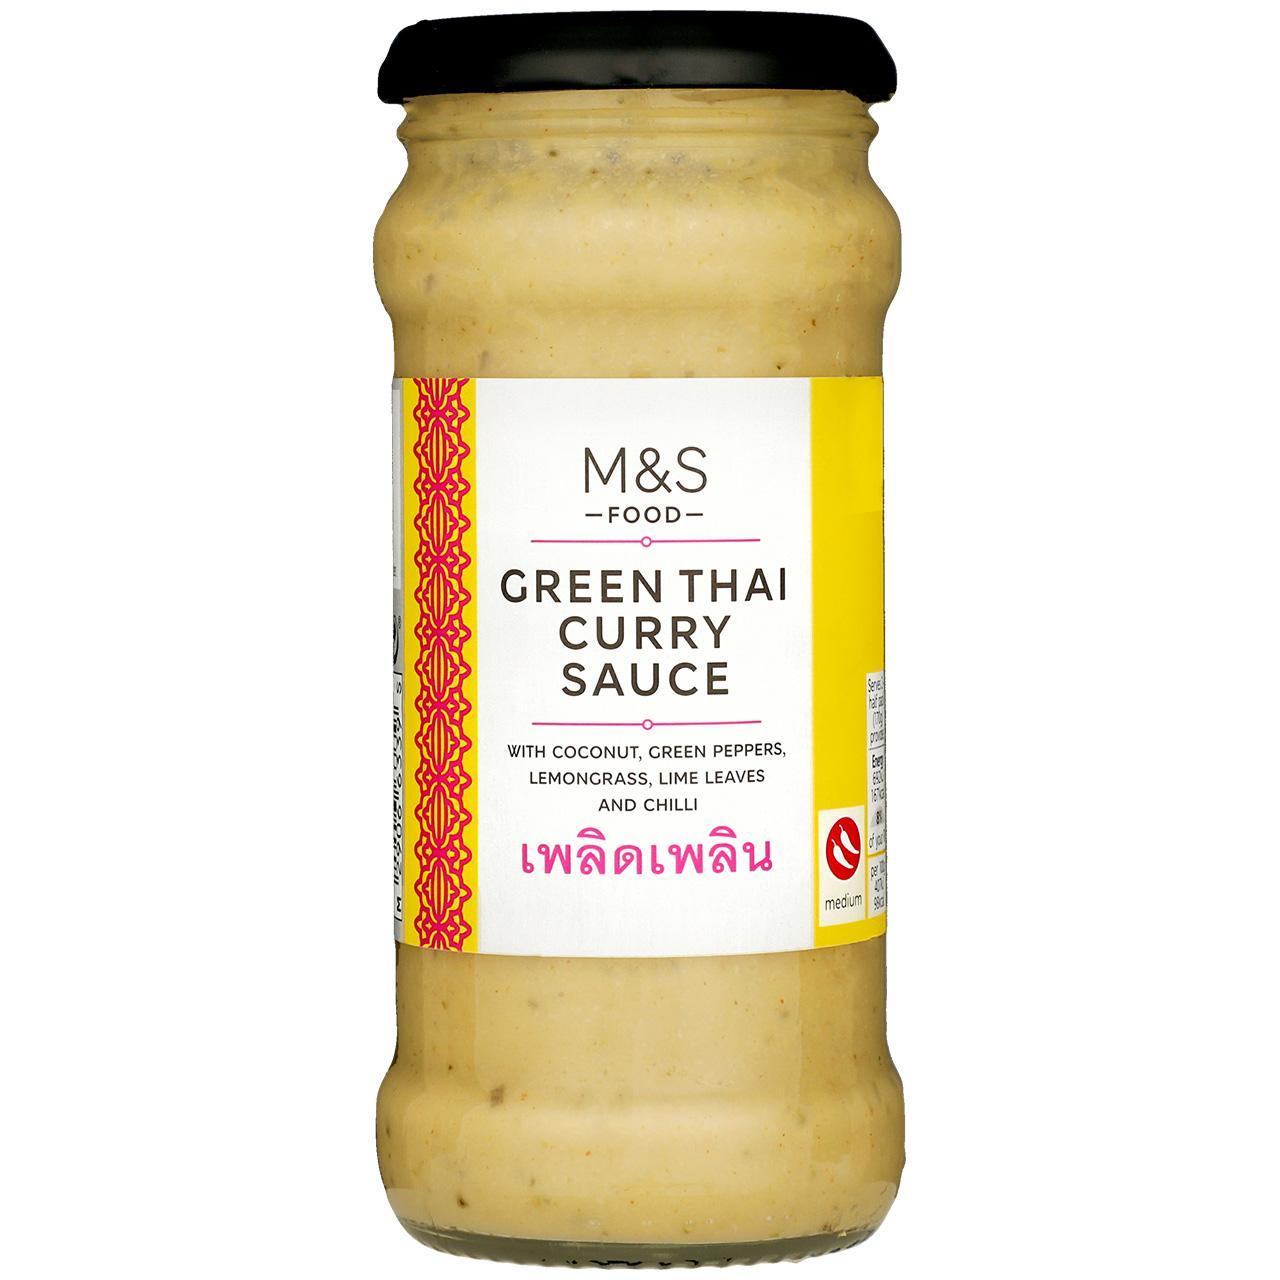 M&S Green Thai Curry Sauce